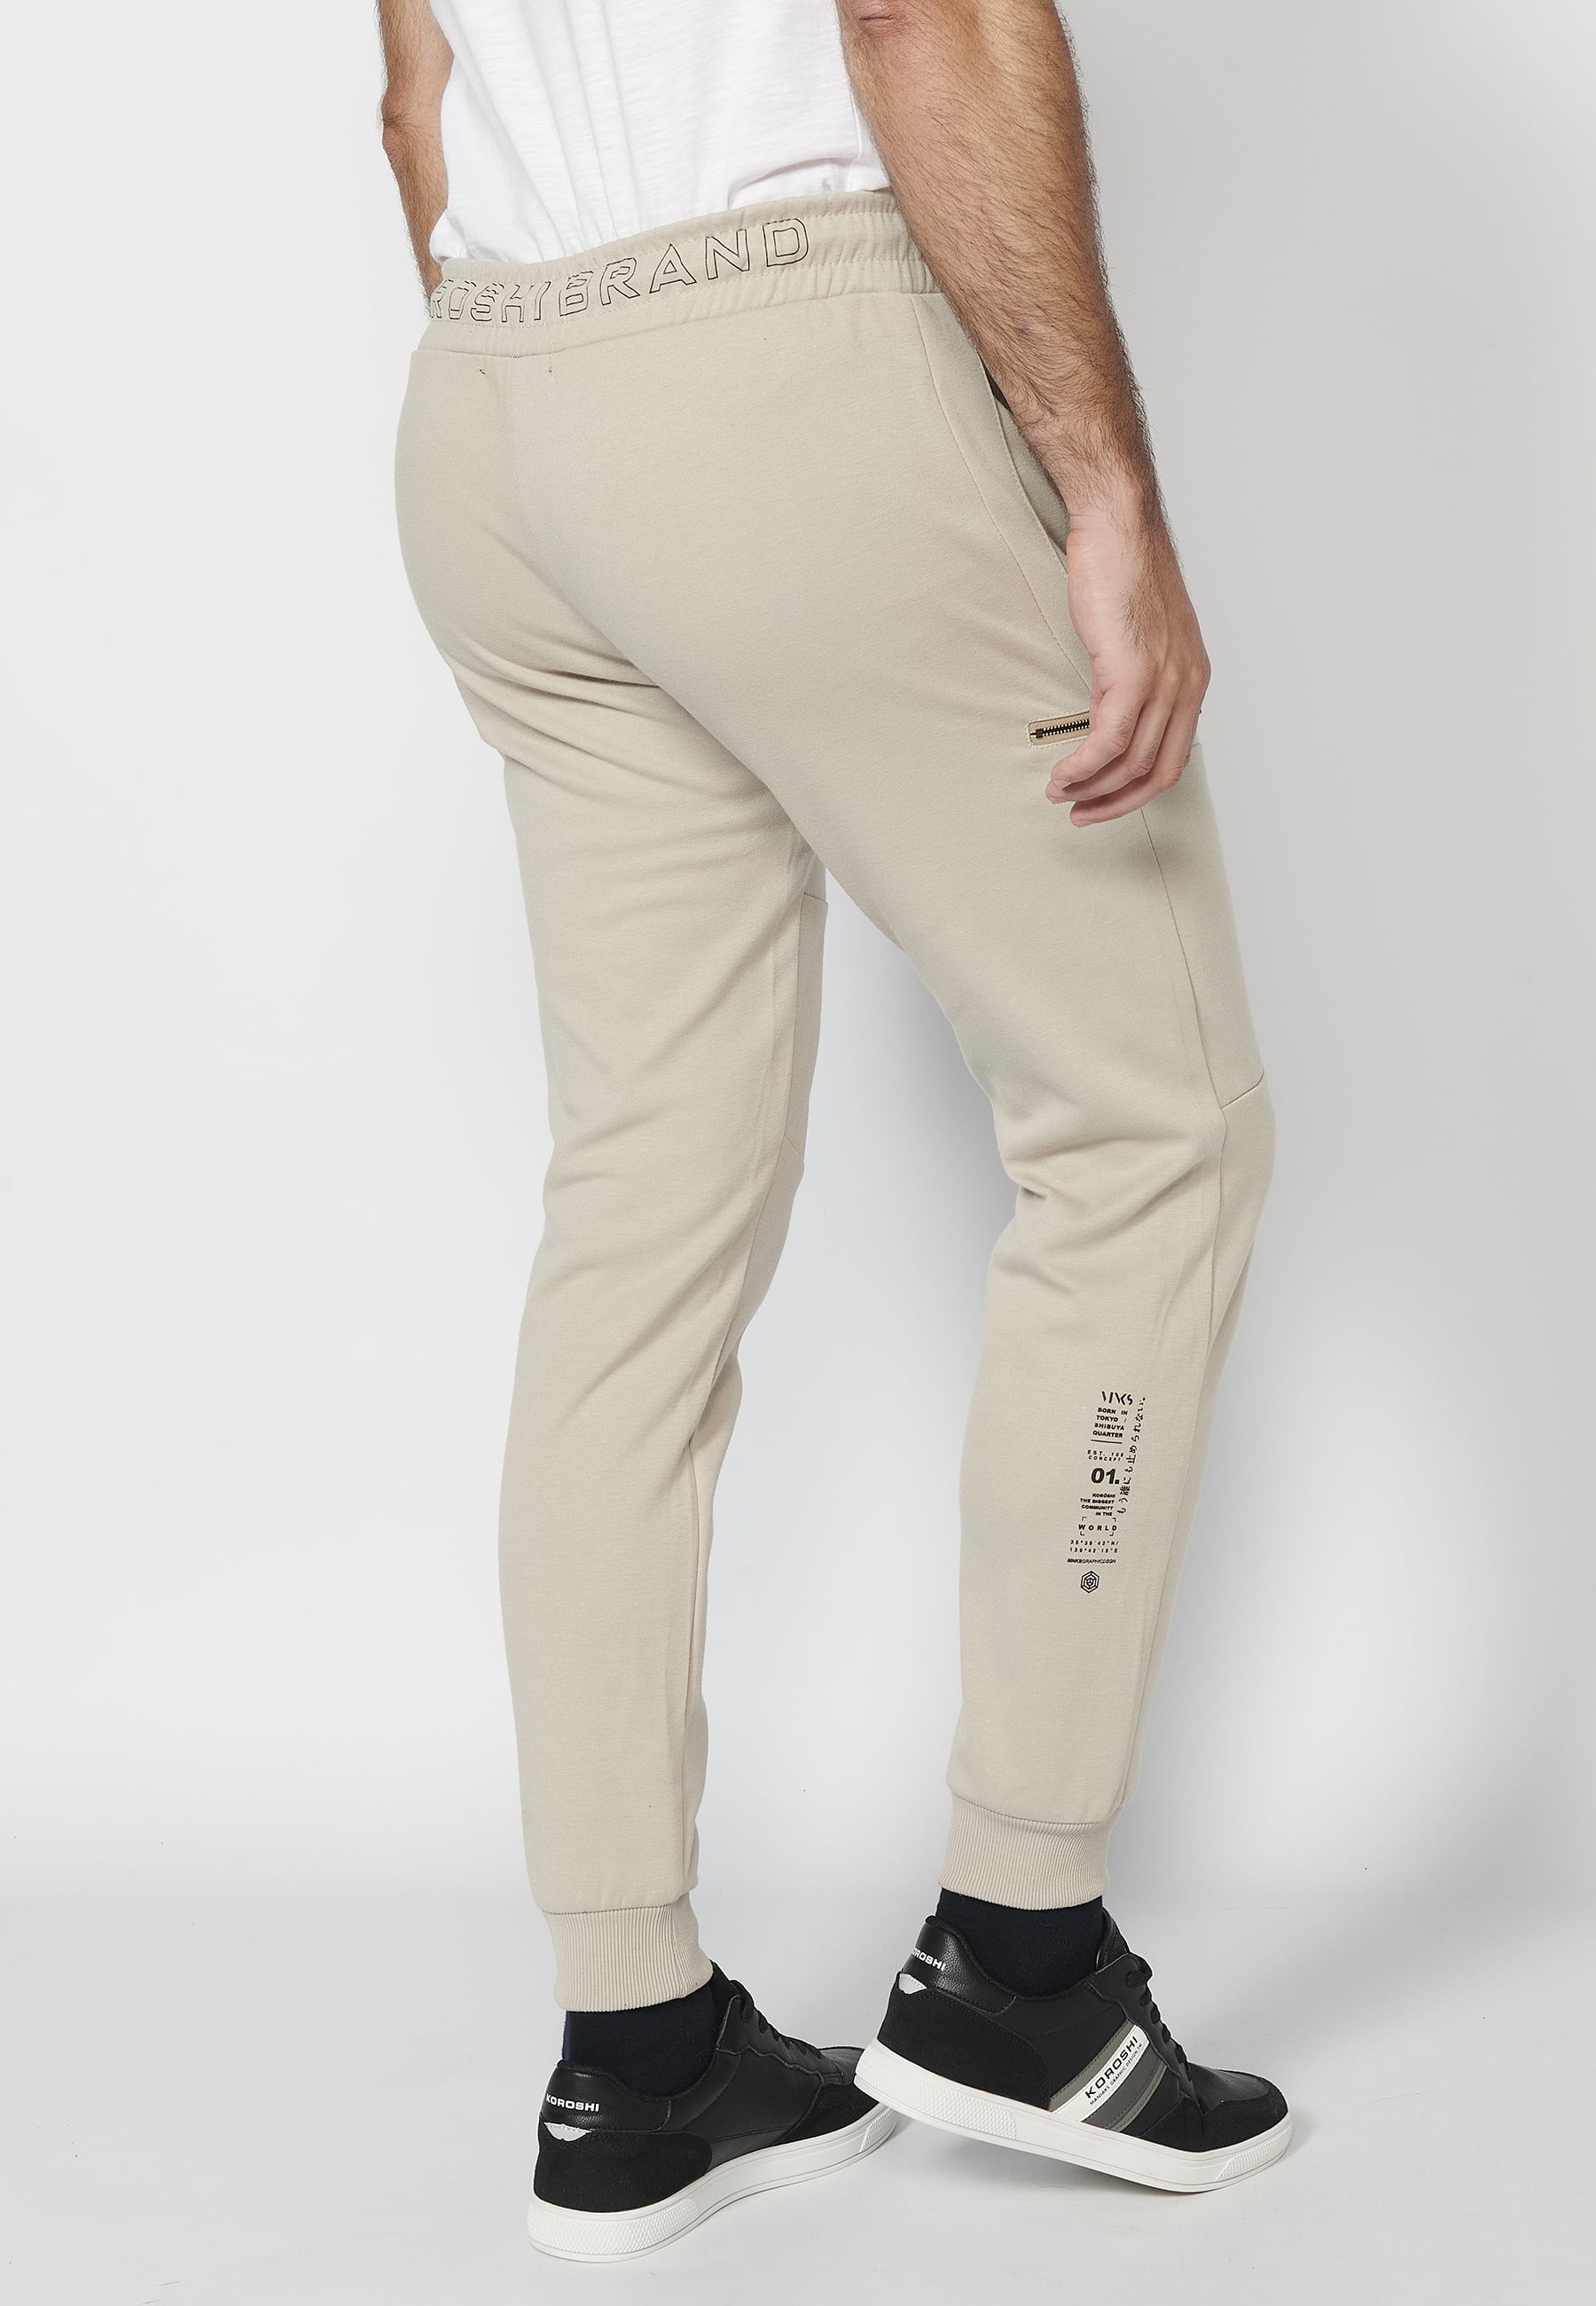 Pantalon de jogging long avec taille caoutchoutée et cordon de serrage avec découpes aux genoux, couleur Stone, pour Homme 8